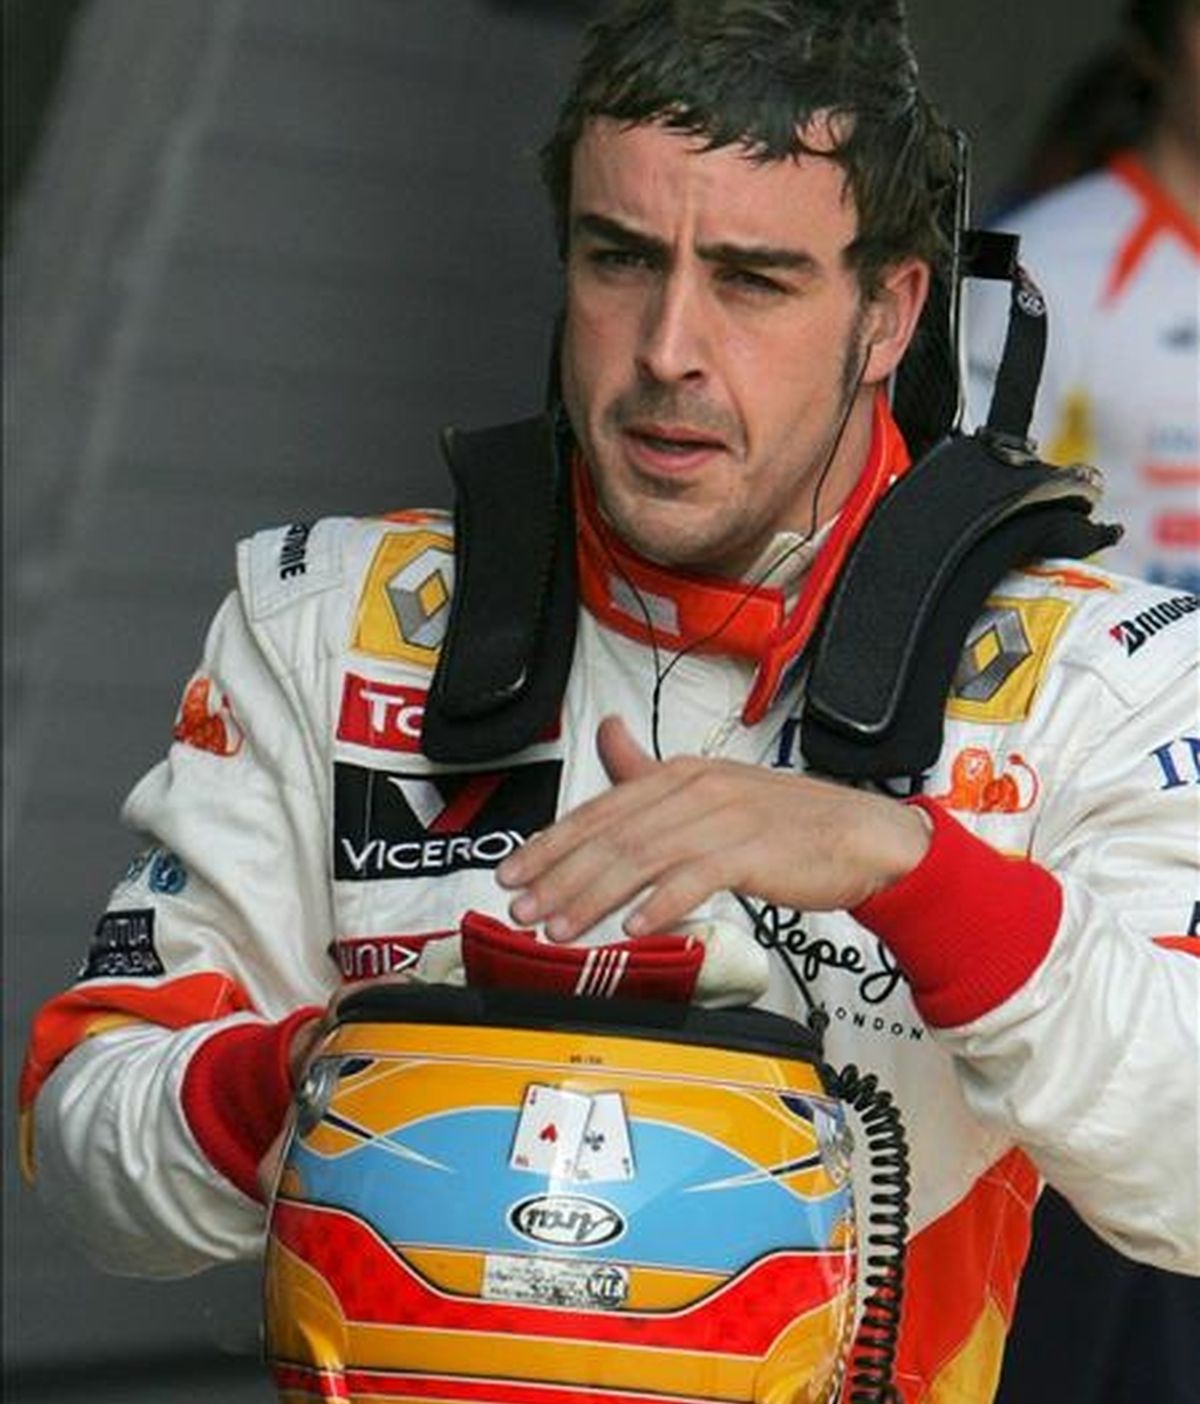 El piloto de Fórmula Uno Fernando Alonso, de Renault, sigue creyendo que puede "luchar por el campeonato". En la imagen, Alonso durante un entrenamiento. EFE/Archivo